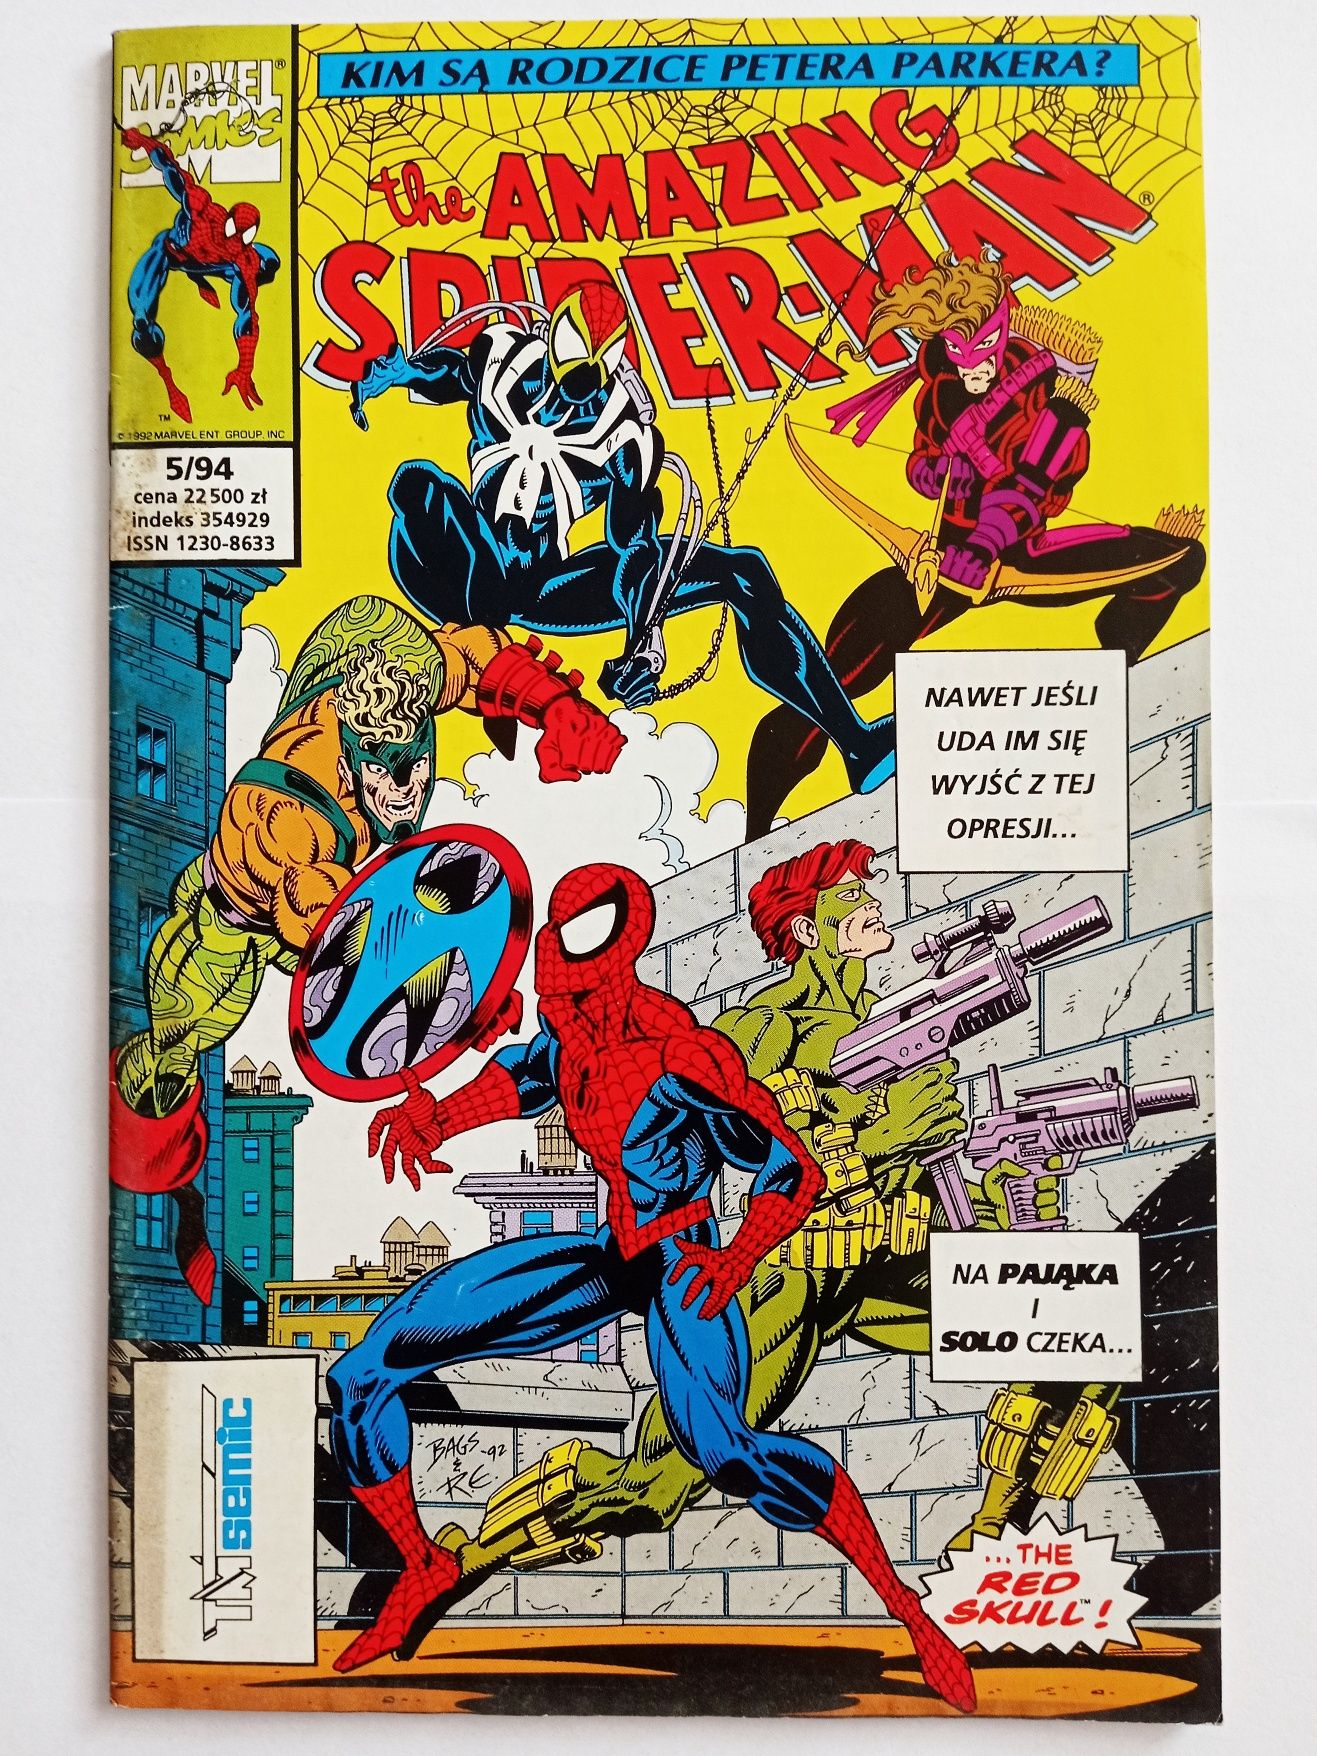 The amazing Spiderman 5/94